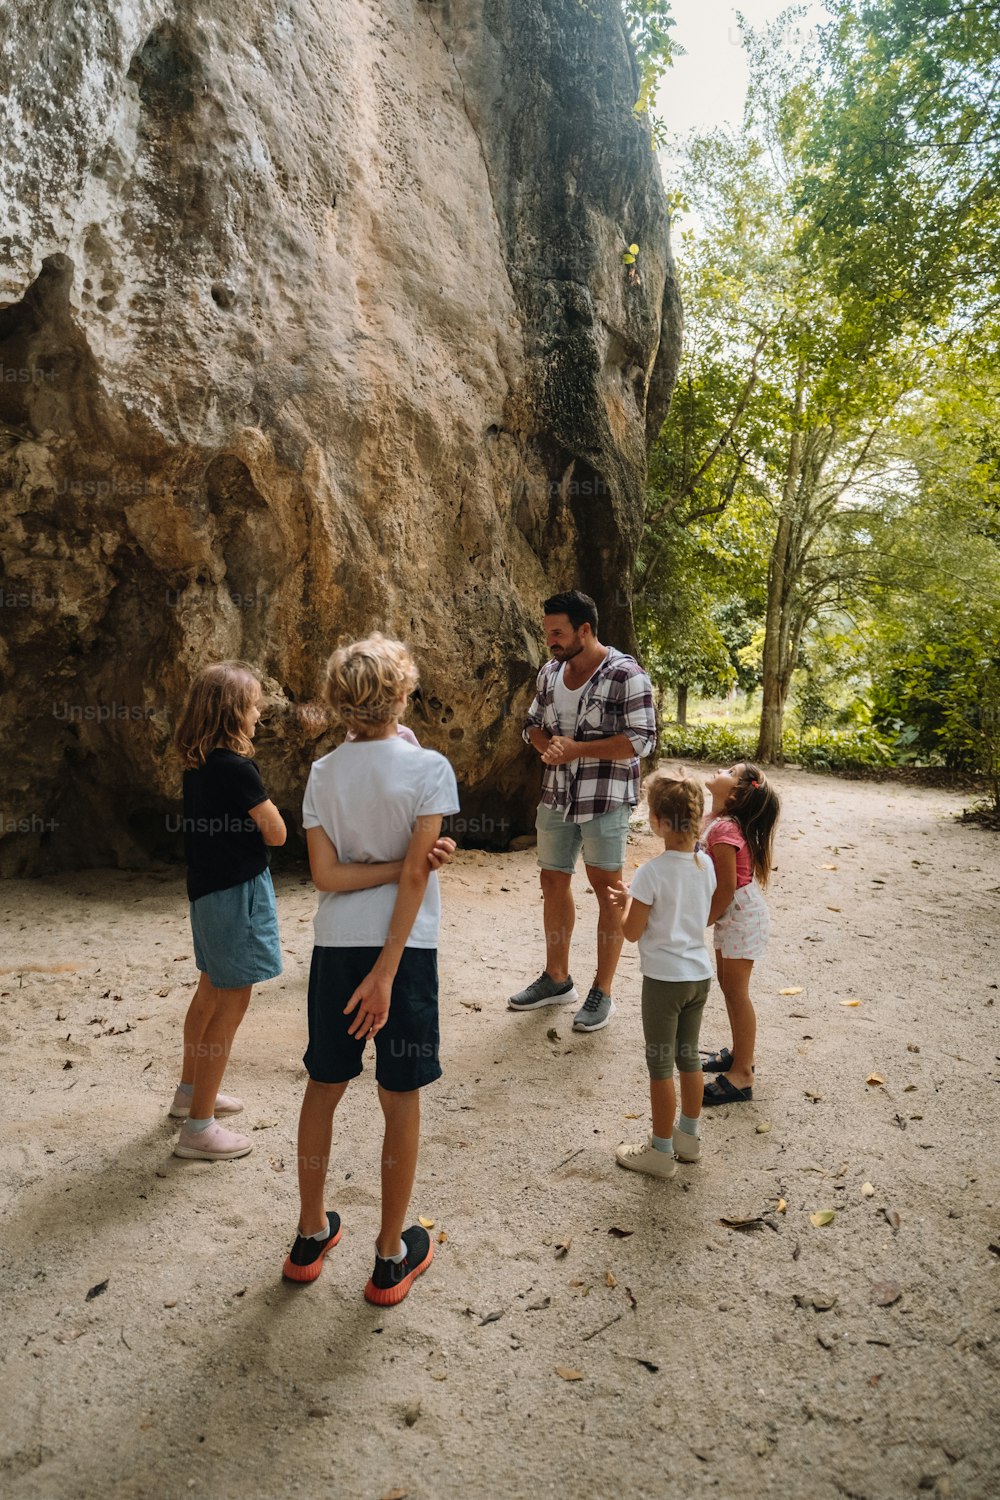 Un grupo de personas de pie frente a una gran roca